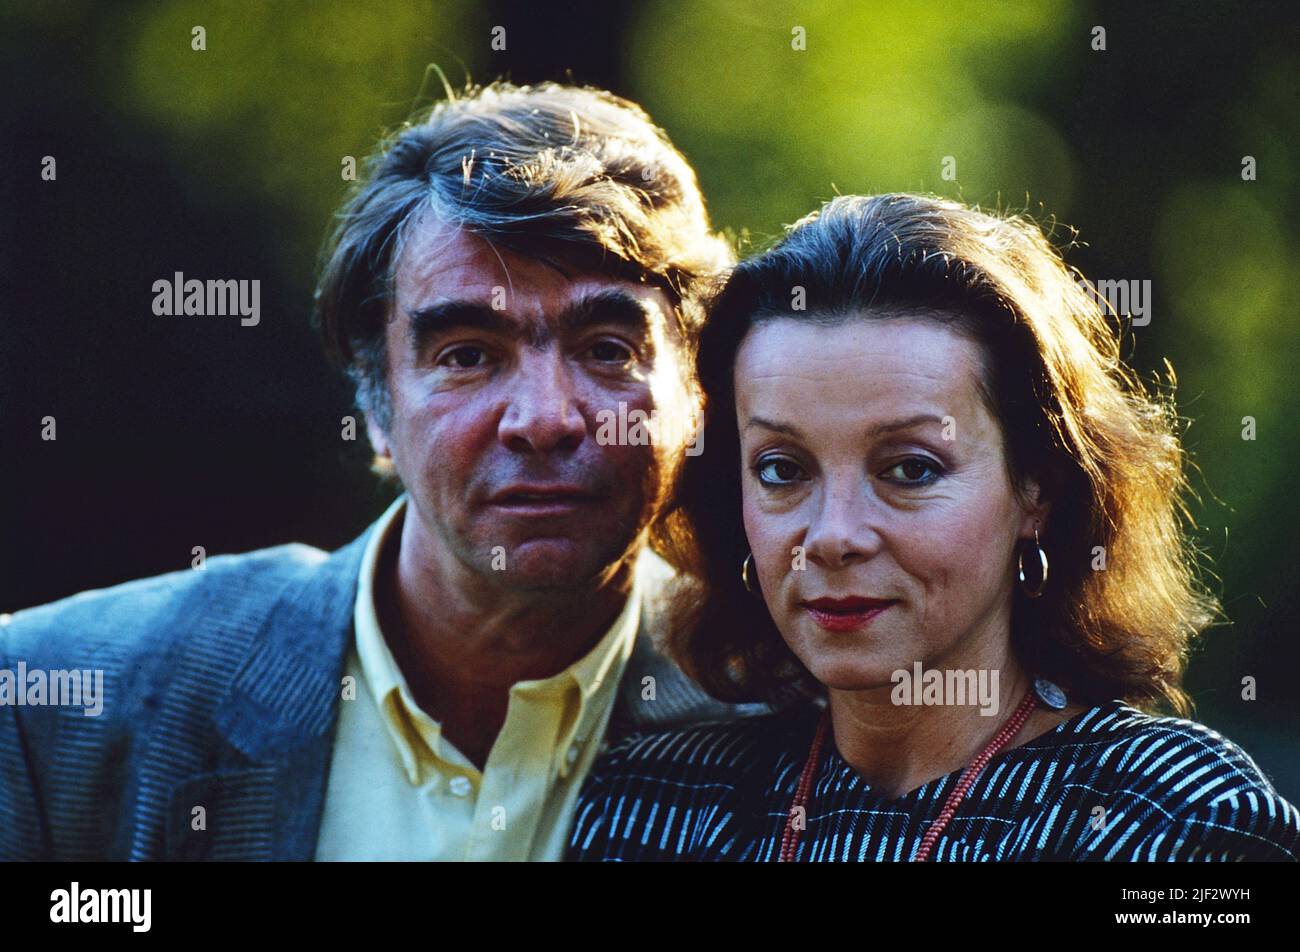 Das Schauspielerpaar Krista Stadler und Joachim Kemmer, privat, Deutschland, 1990. The actor couple Krista Stadler and Joachim Kemmer, private, Germany, 1990. Stock Photo